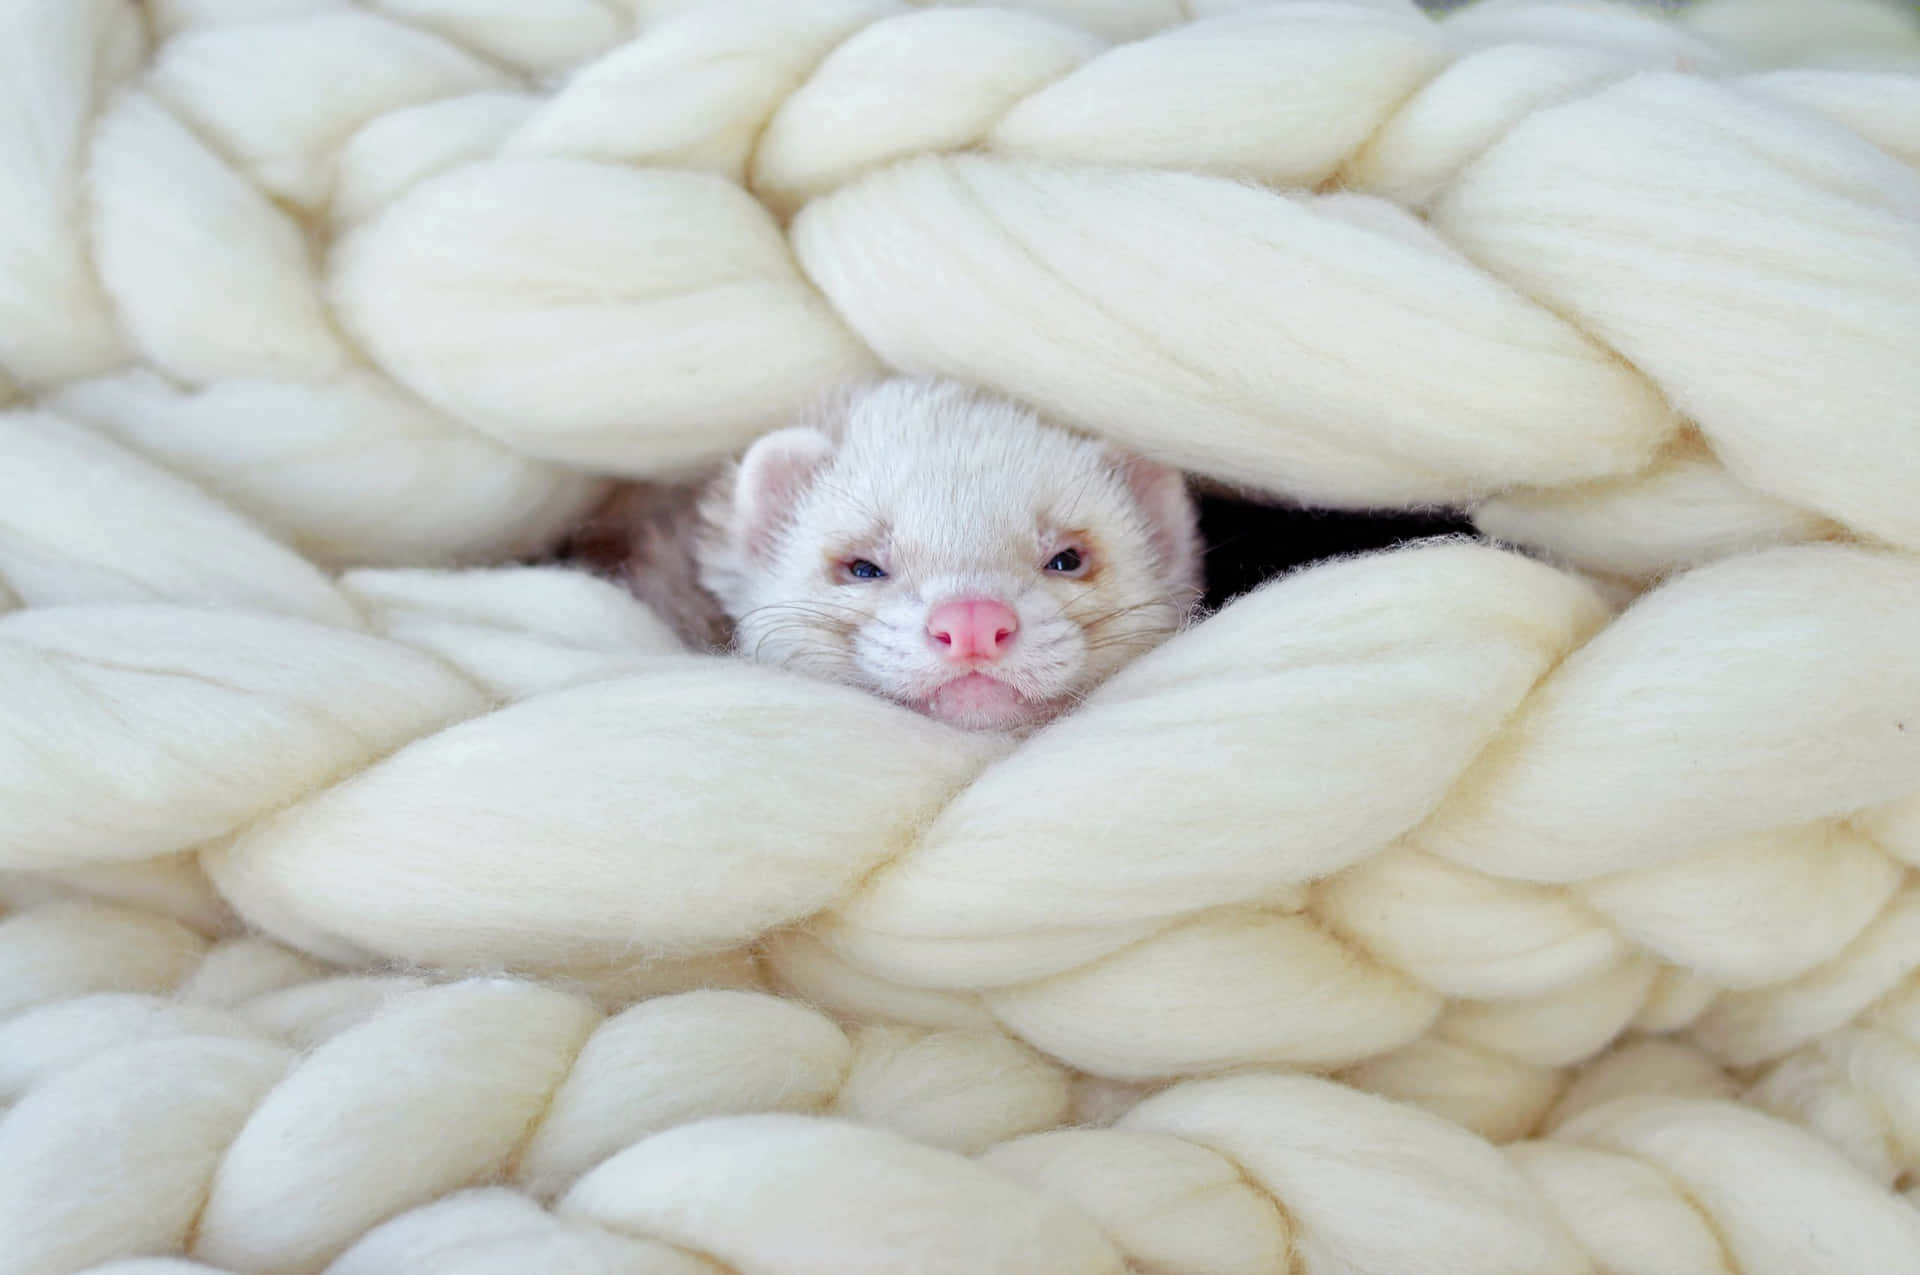 A curious ferret exploring its environment.